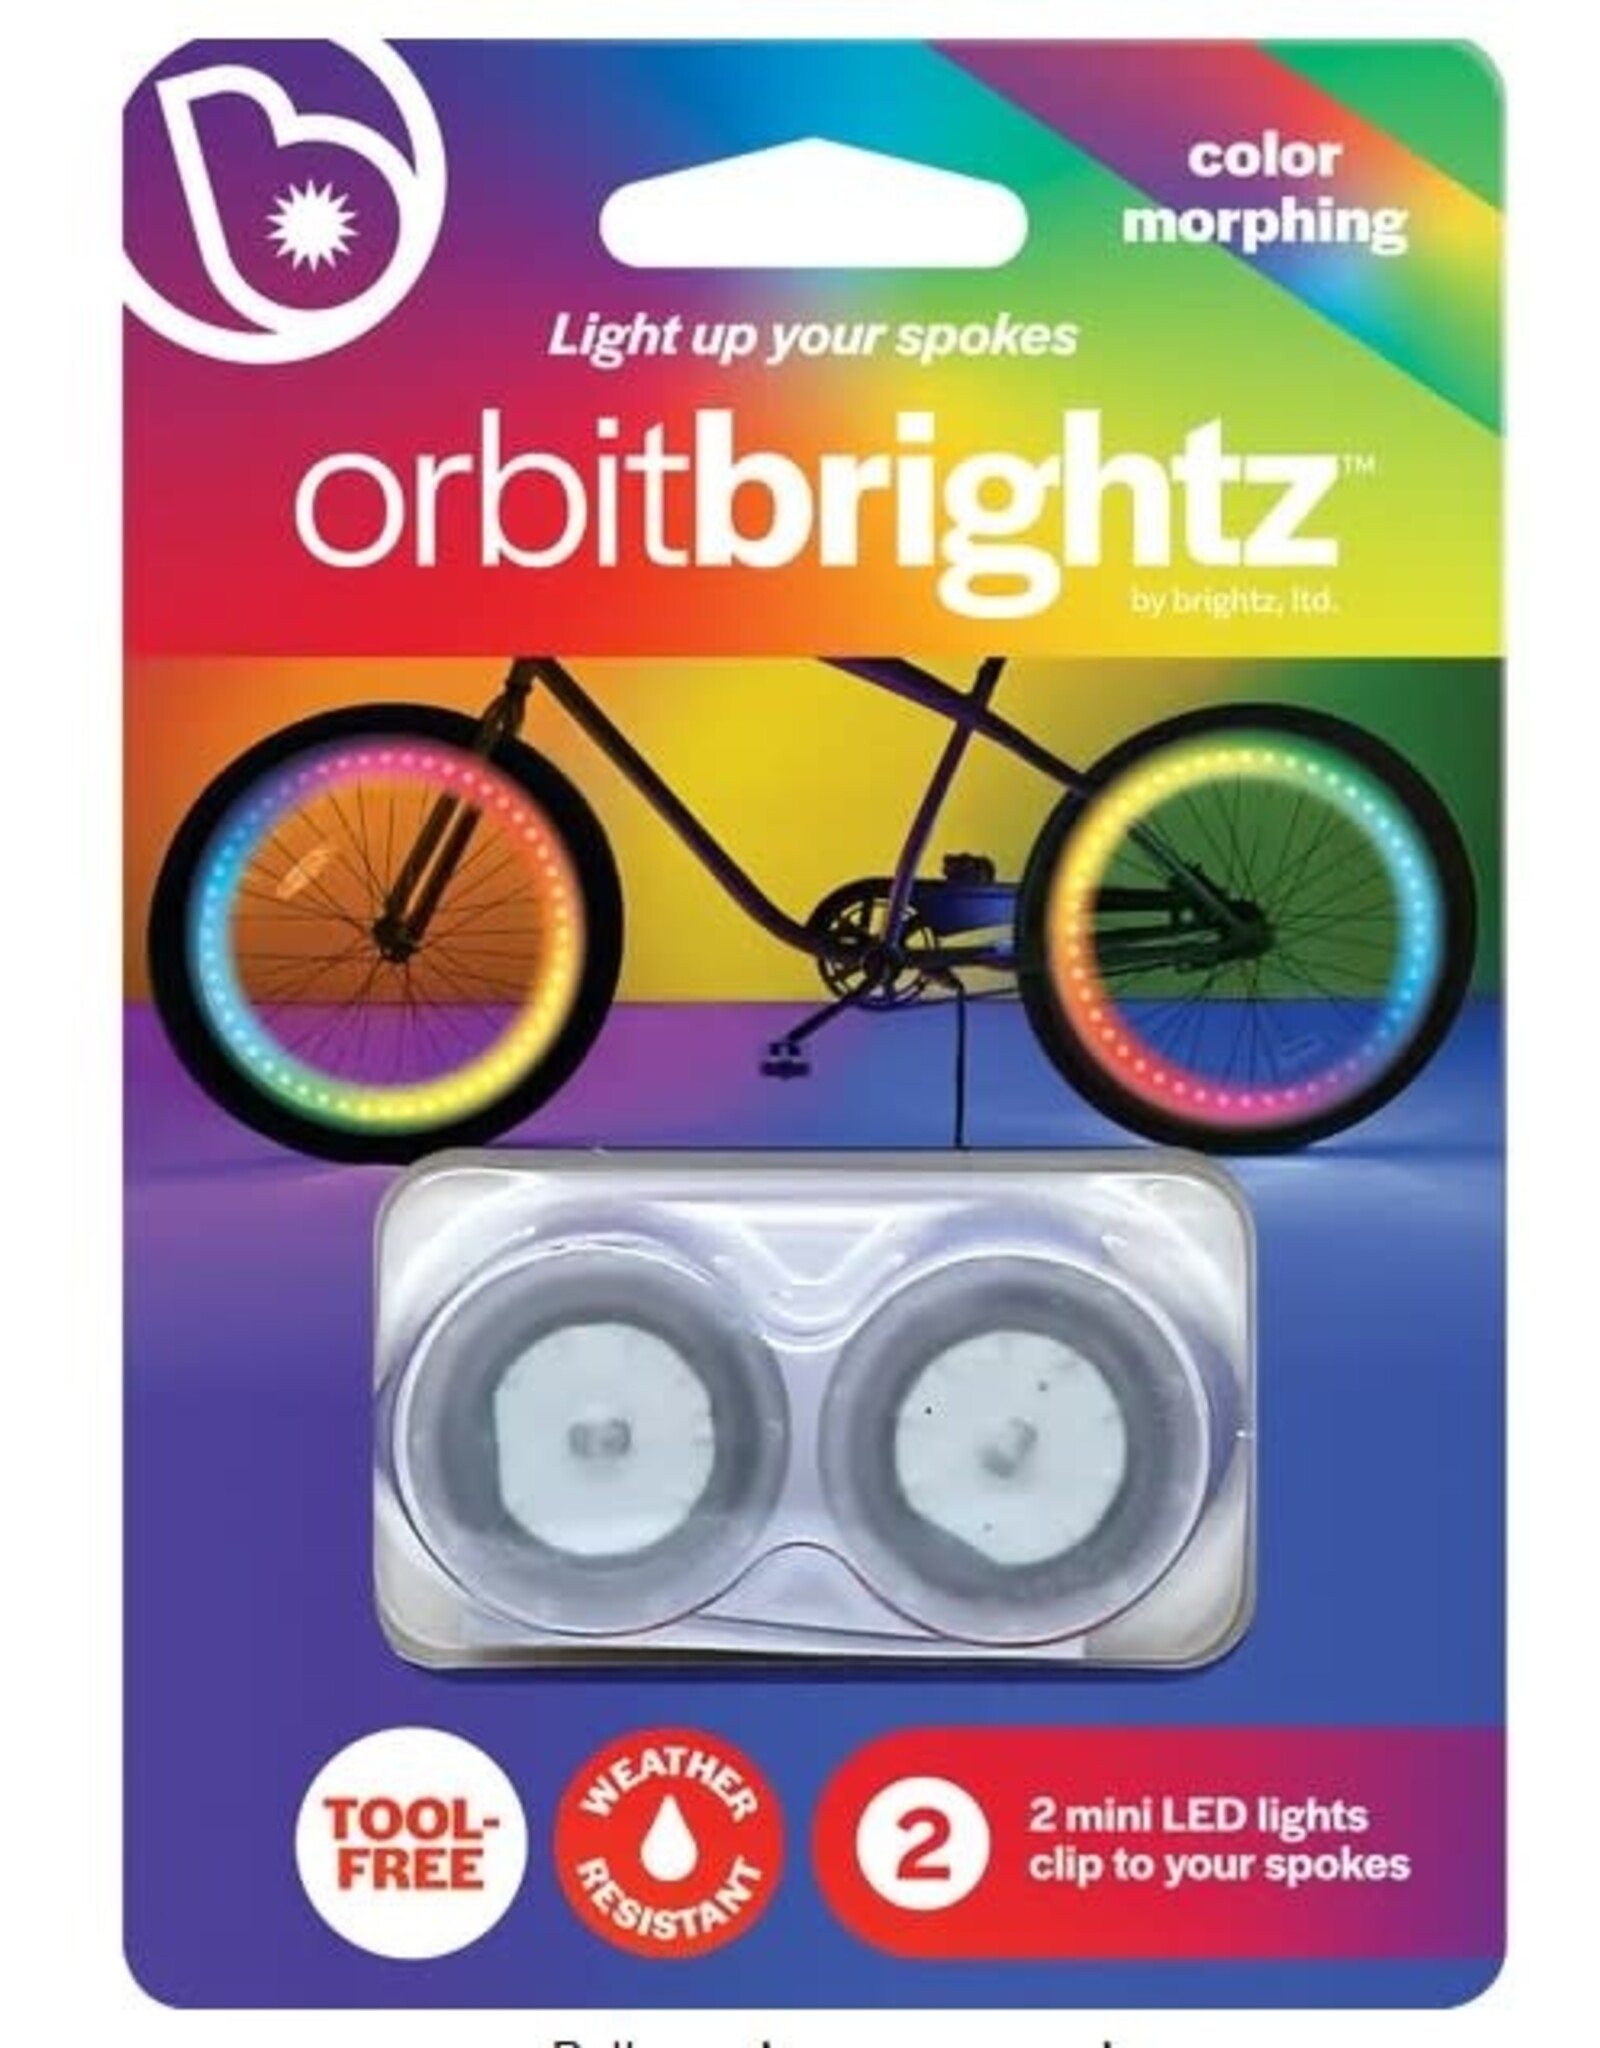 Brightz Orbit Brightz - Color Morphing